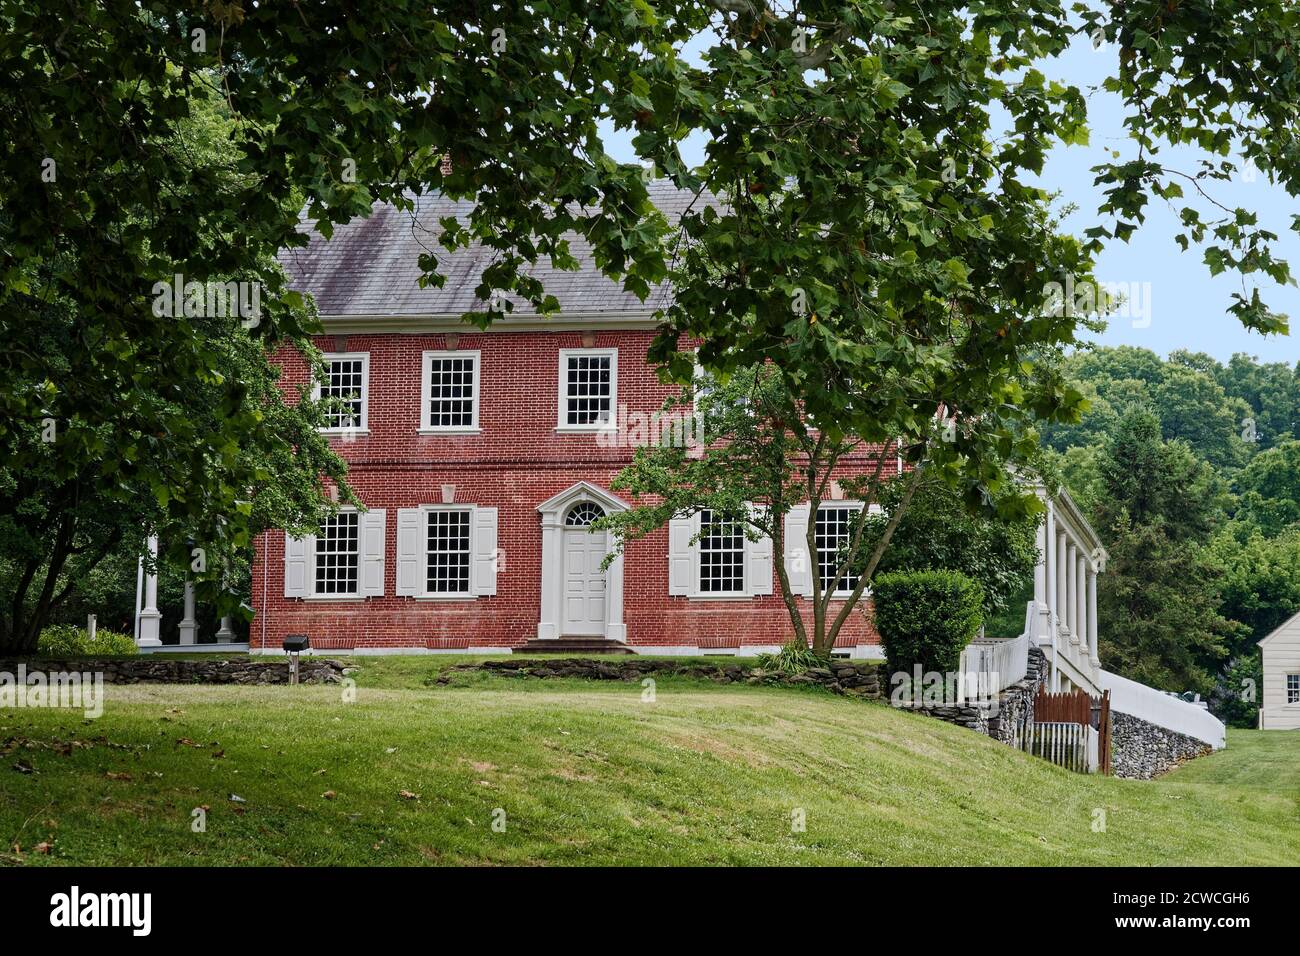 Rock Ford Plantation, maison en brique rouge, 18 siècle, vue de face, porches sur les côtés, quatre niveaux, style géorgien, arbres, herbe verte, Pennsylvanie, LANC Banque D'Images